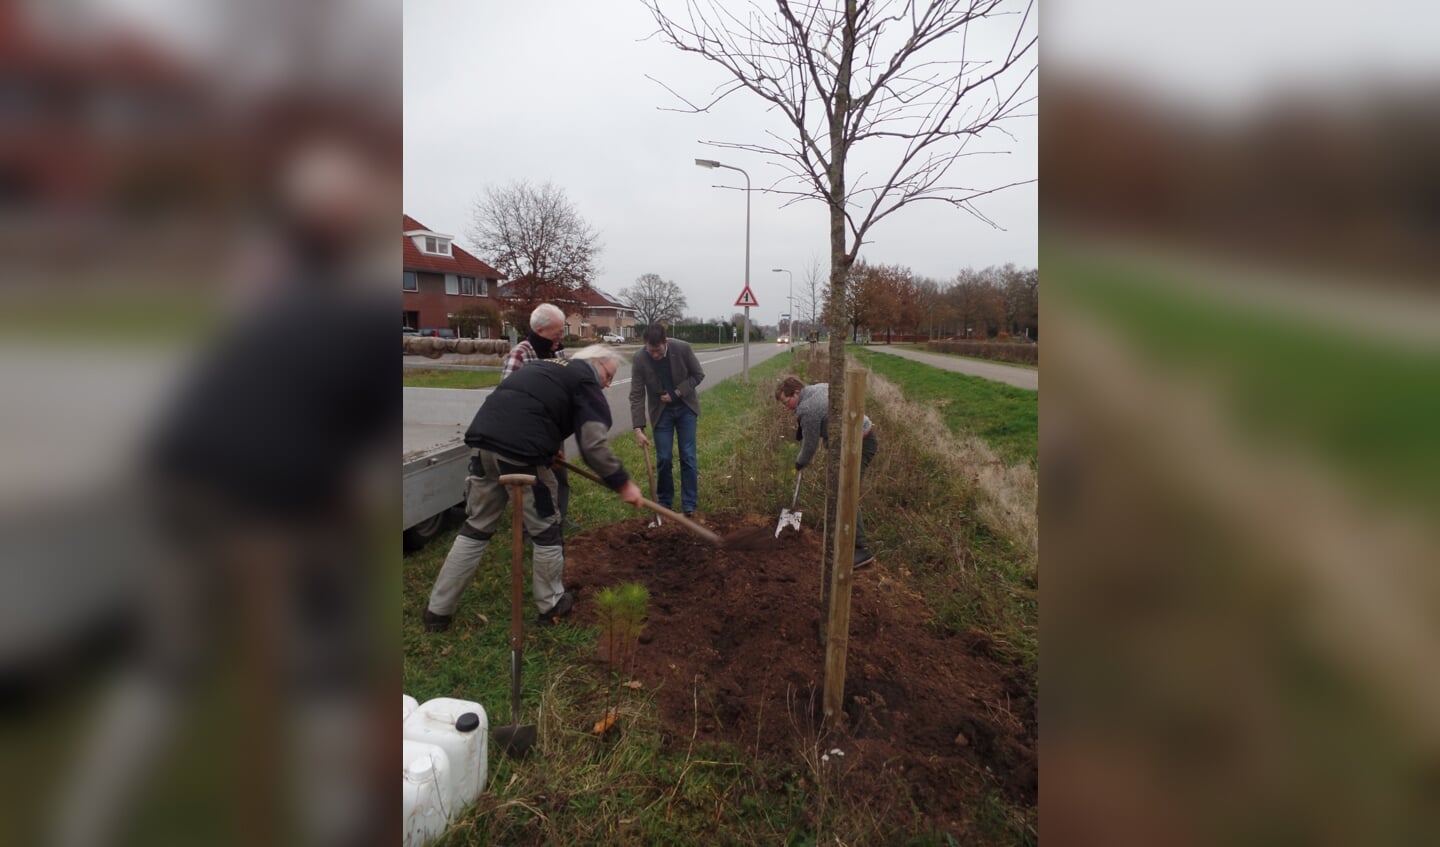 Ondanks zijn tijdelijke handicap pakte burgemeester Joost van Oostrum toch de schop ter hand om mee te helpen de lijsterbesboom te planten. Foto: Jan Hendriksen